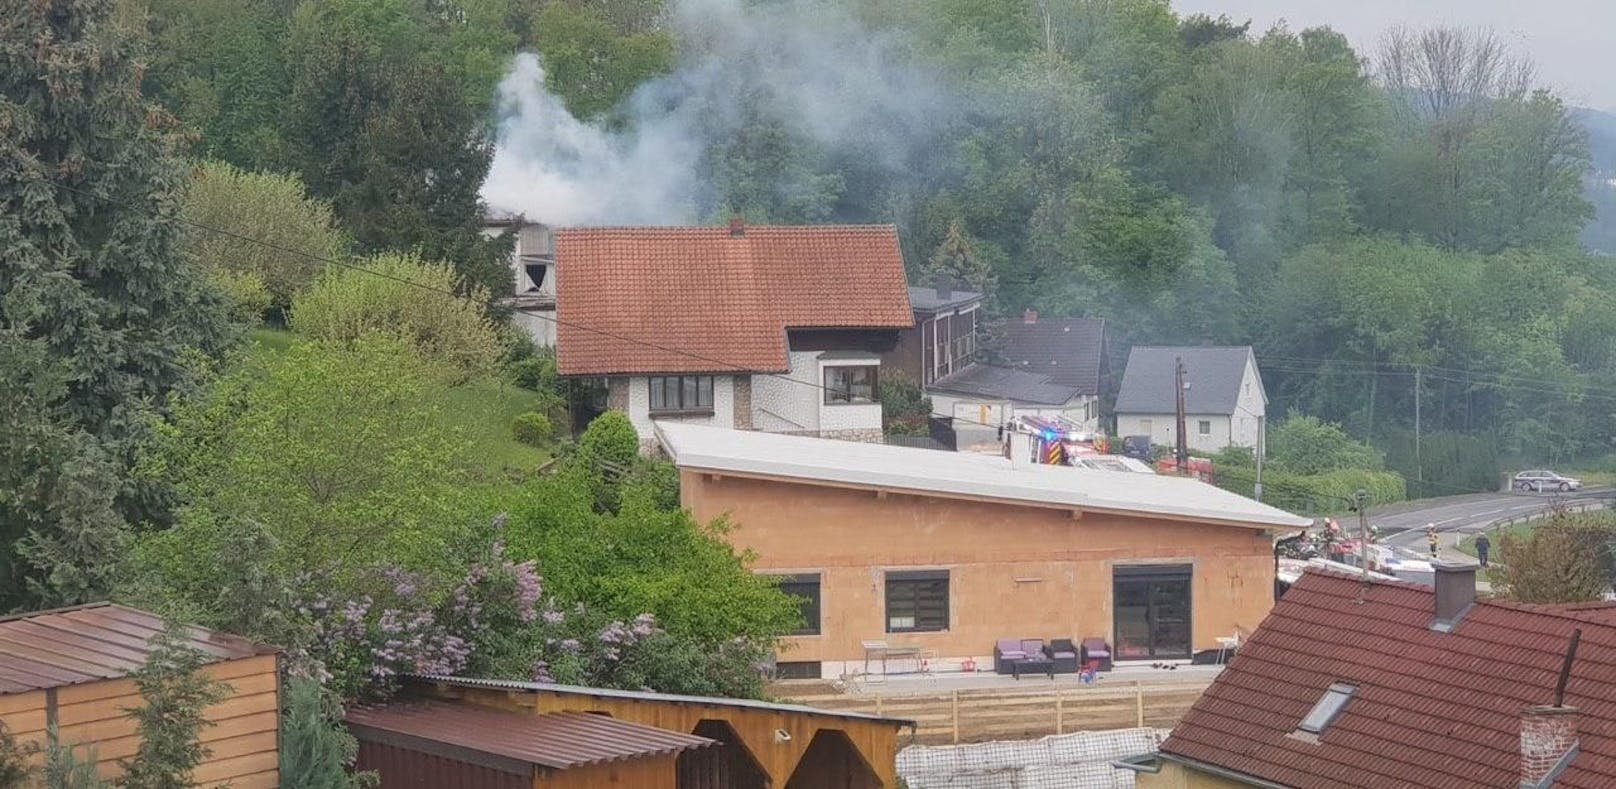 Brand in Tischlerei, fünf Feuerwehren im Einsatz